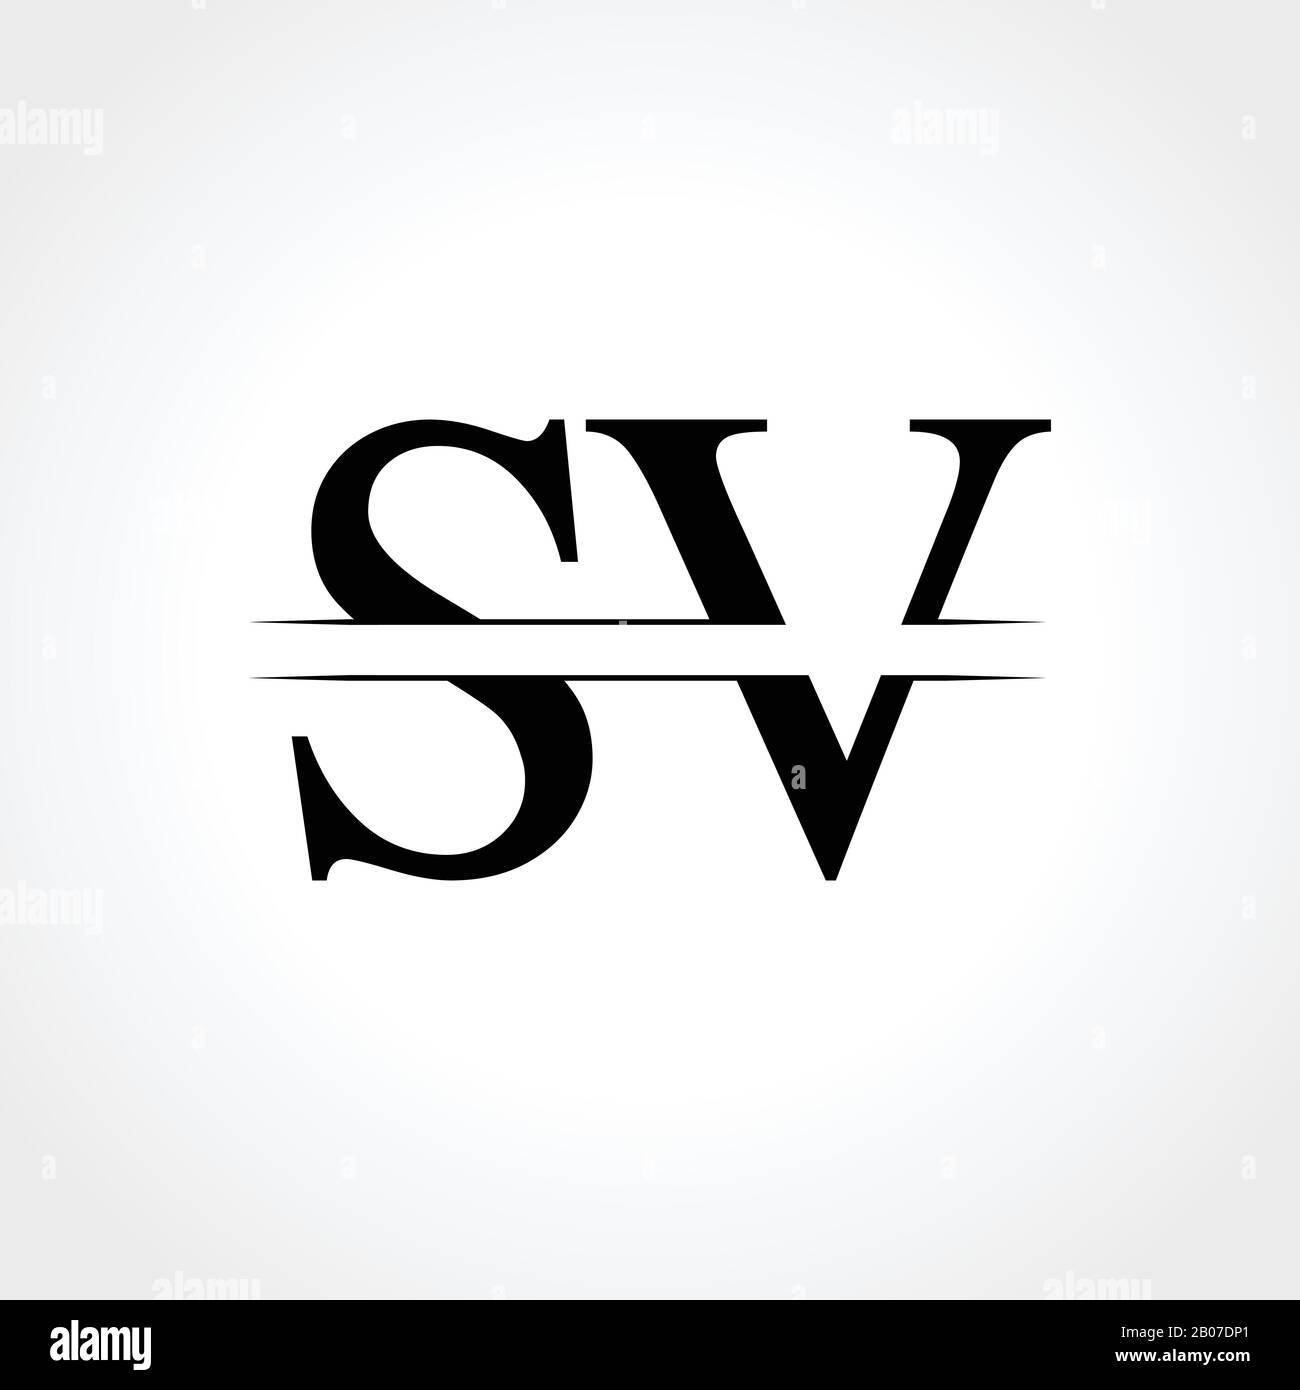 Initial Letter Sv Logo Design Vector Template Sv Letter Logo Design Stock Vector Image And Art